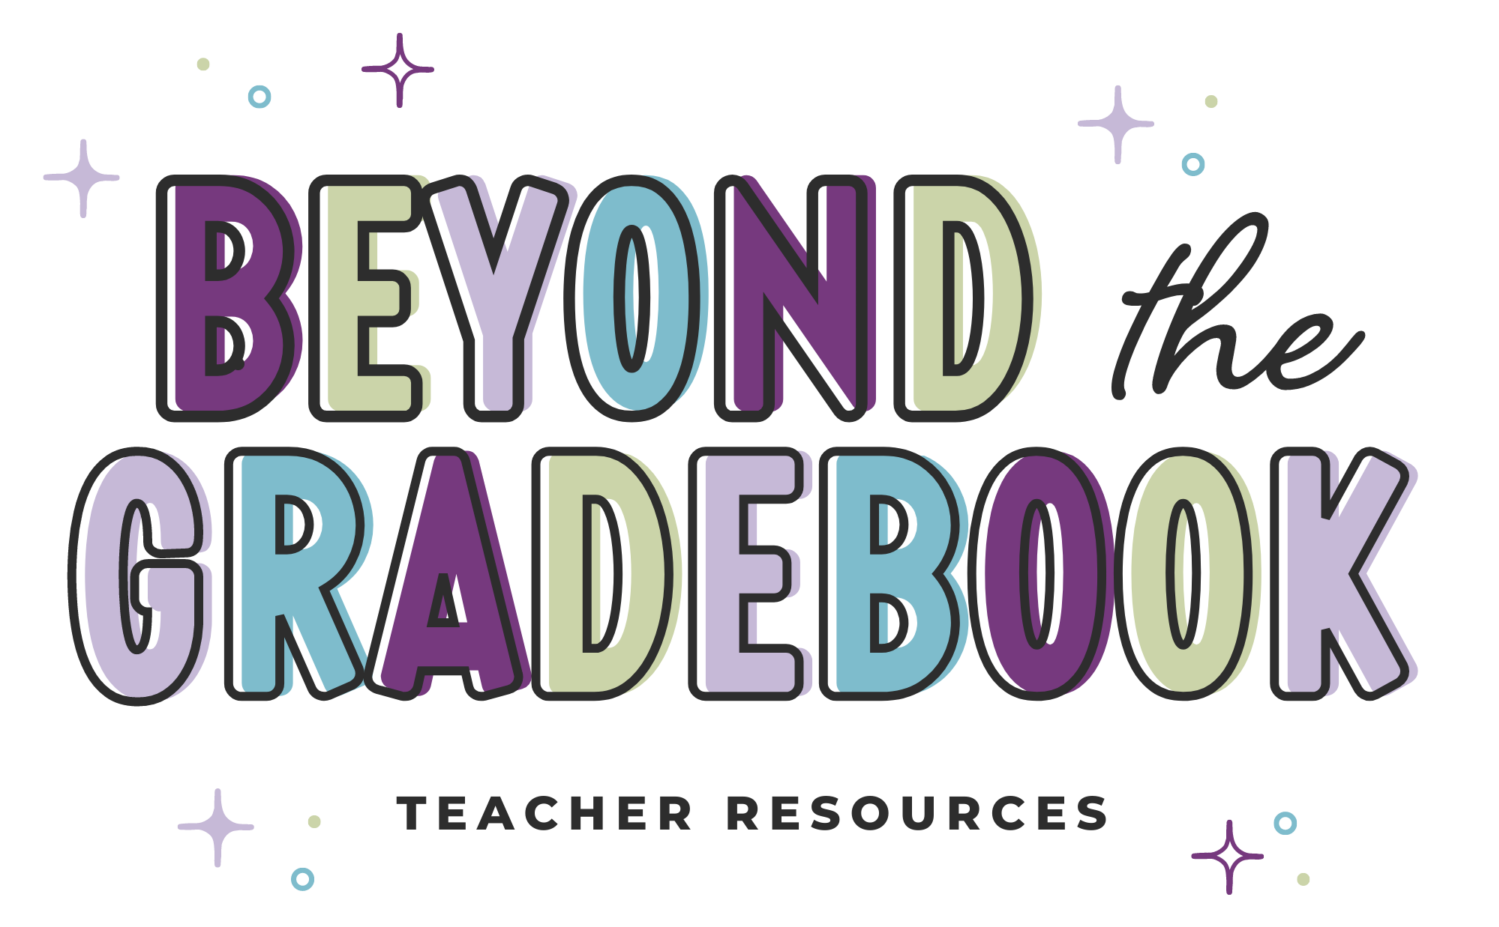 Beyond the Gradebook